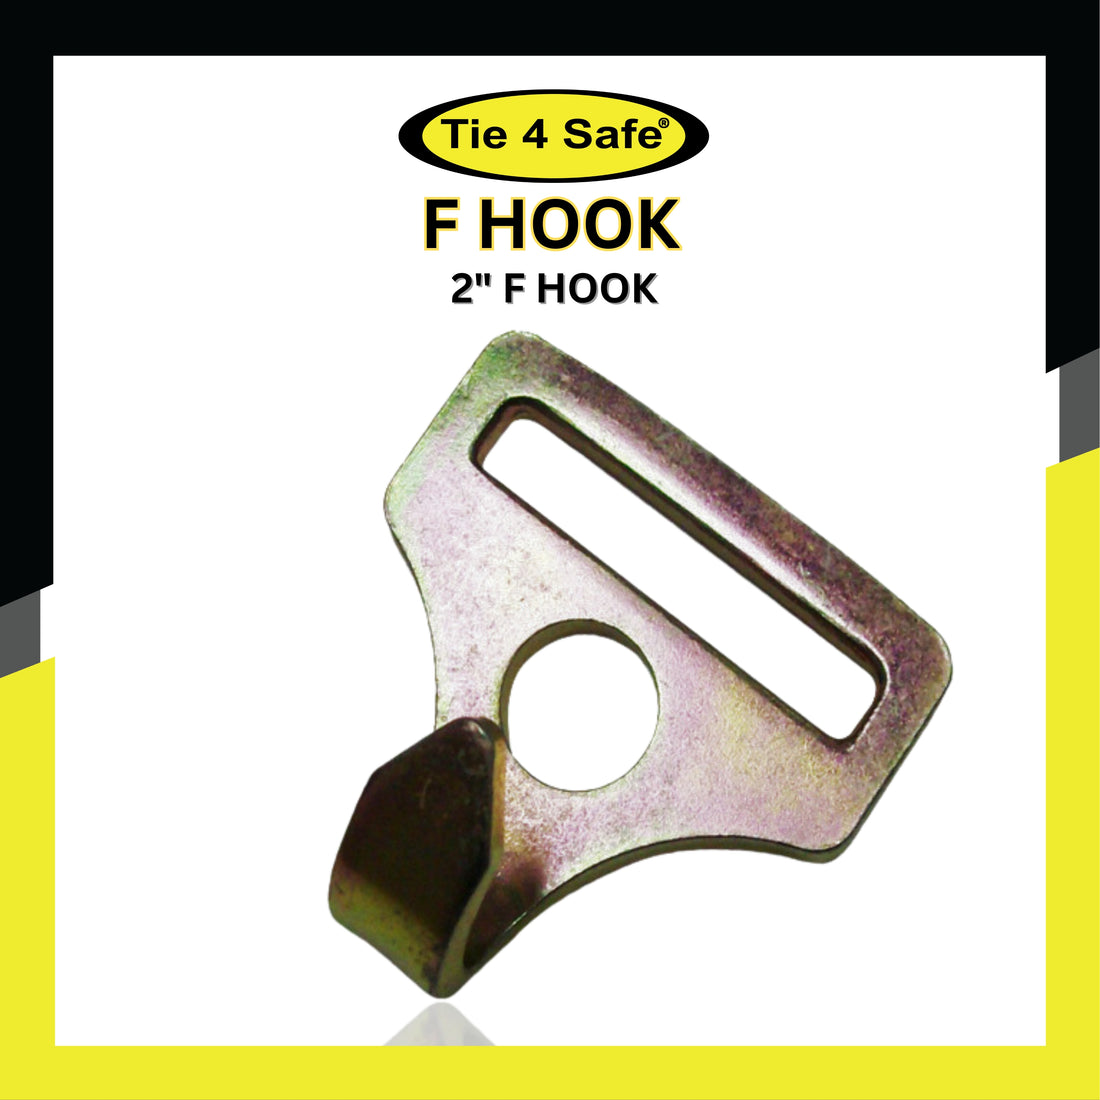 2" F Hook